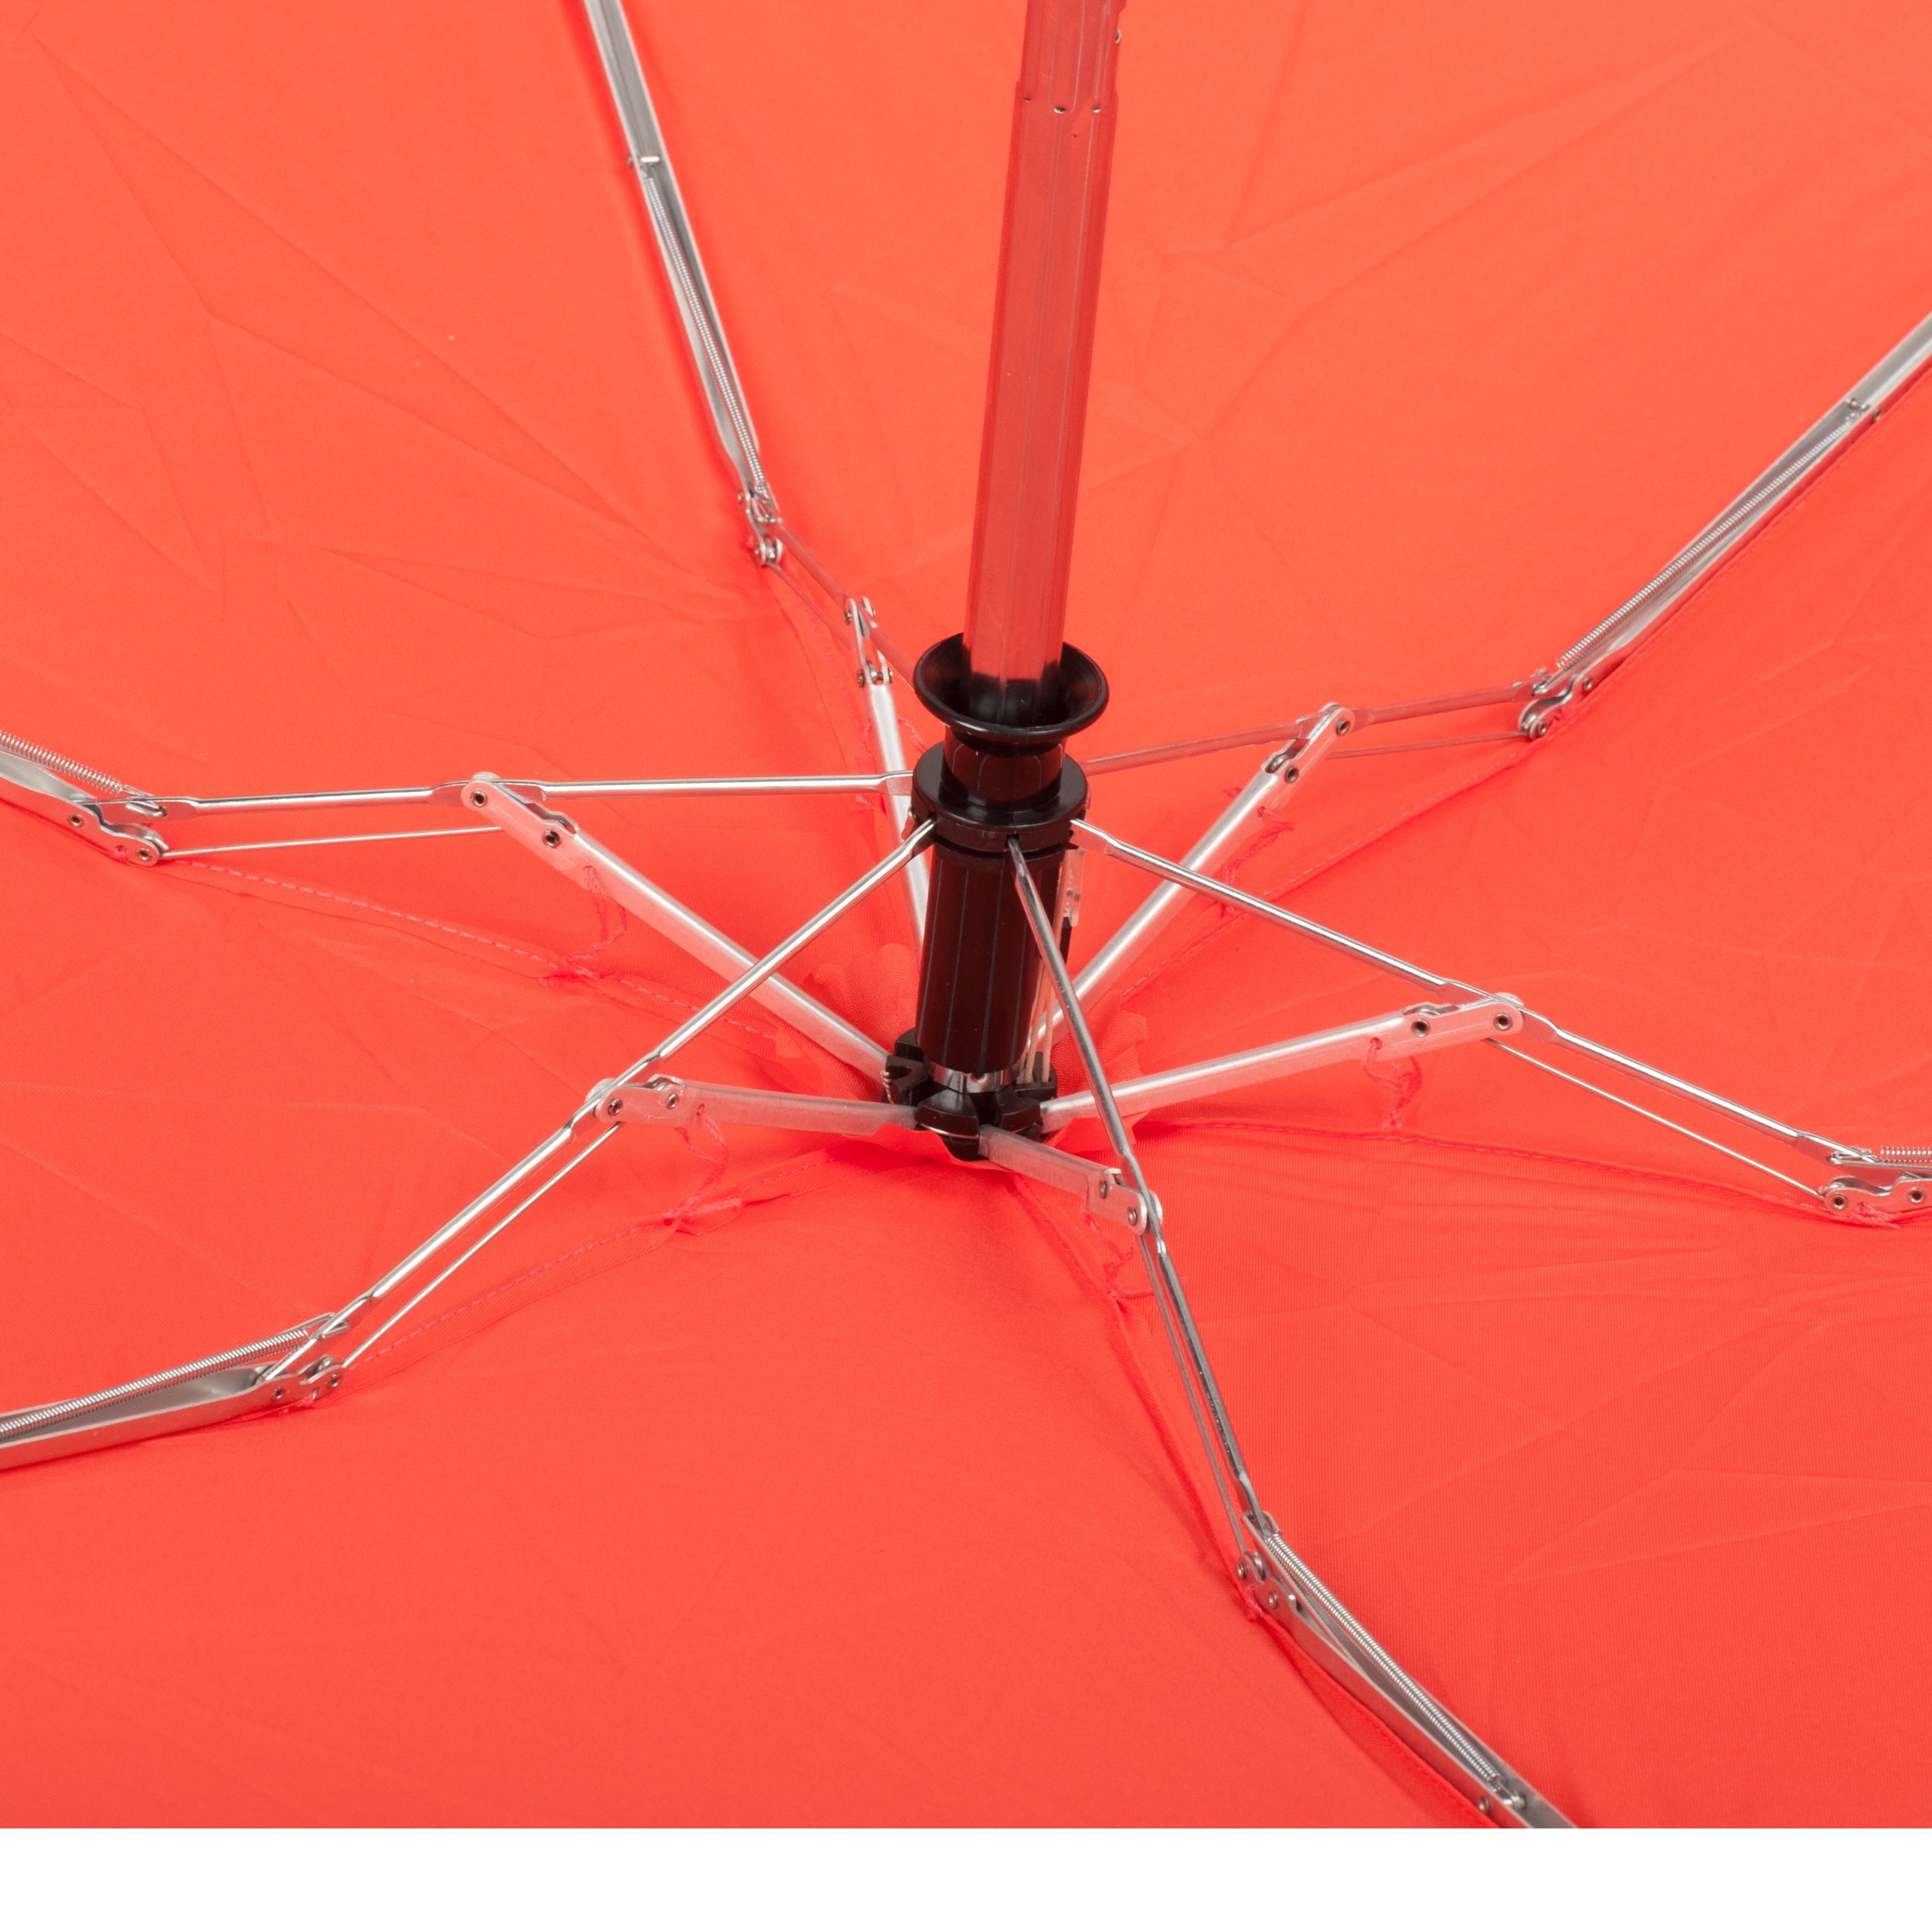 Parapluie pliant rose-orange